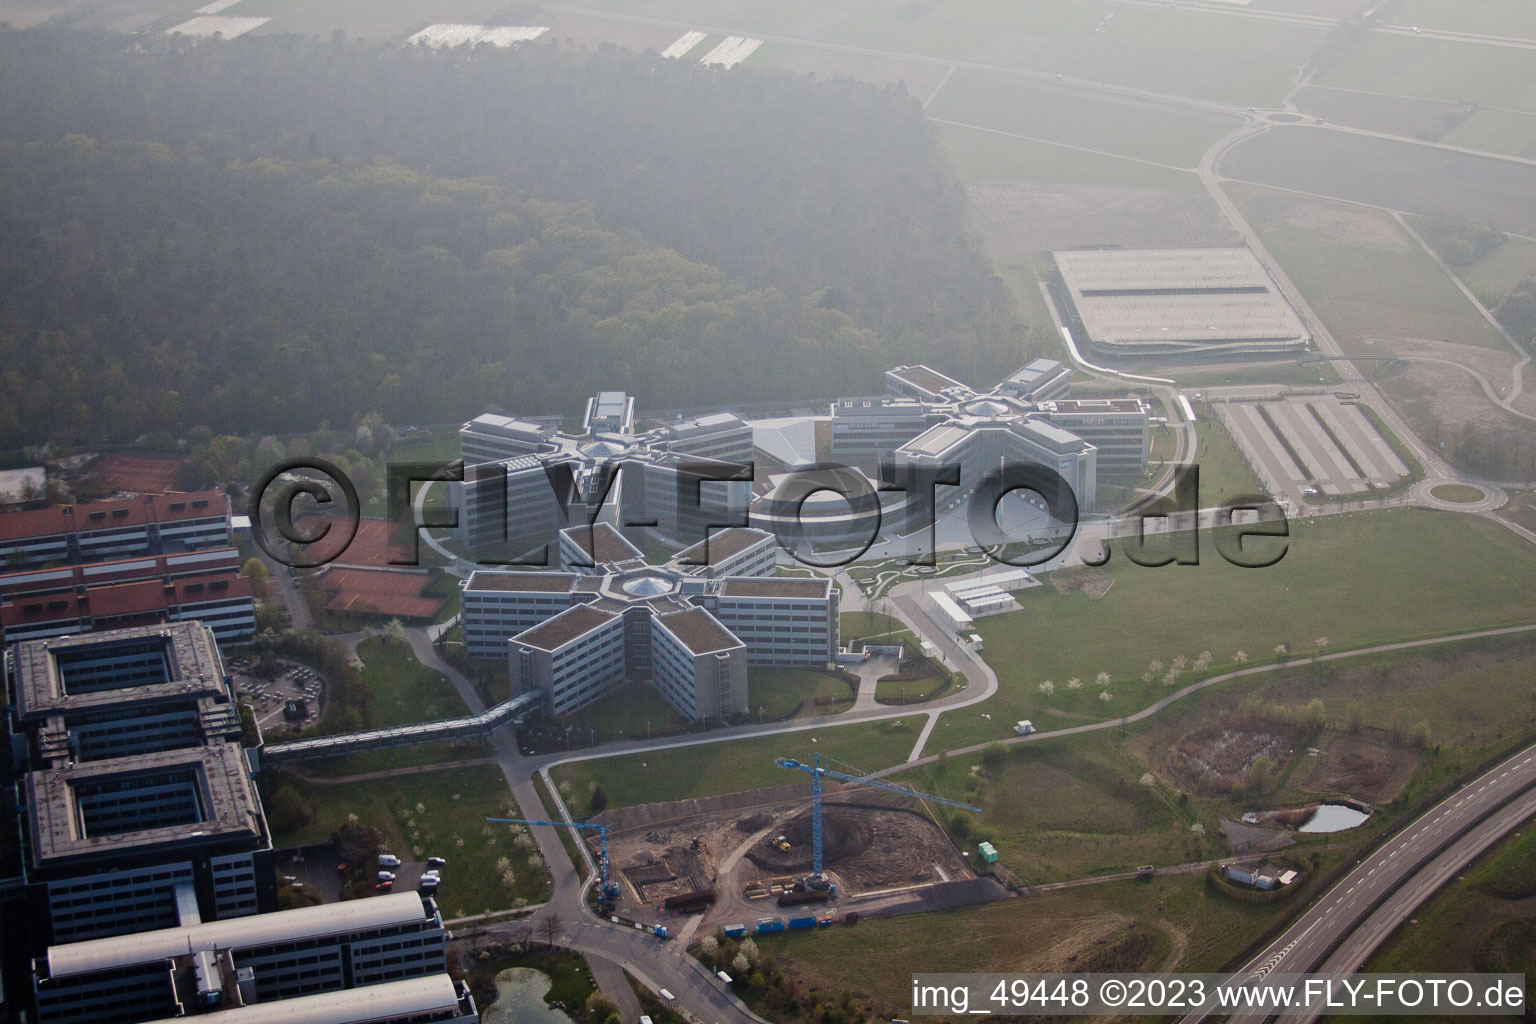 Photographie aérienne de Zone industrielle, SAP AG à Walldorf dans le département Bade-Wurtemberg, Allemagne